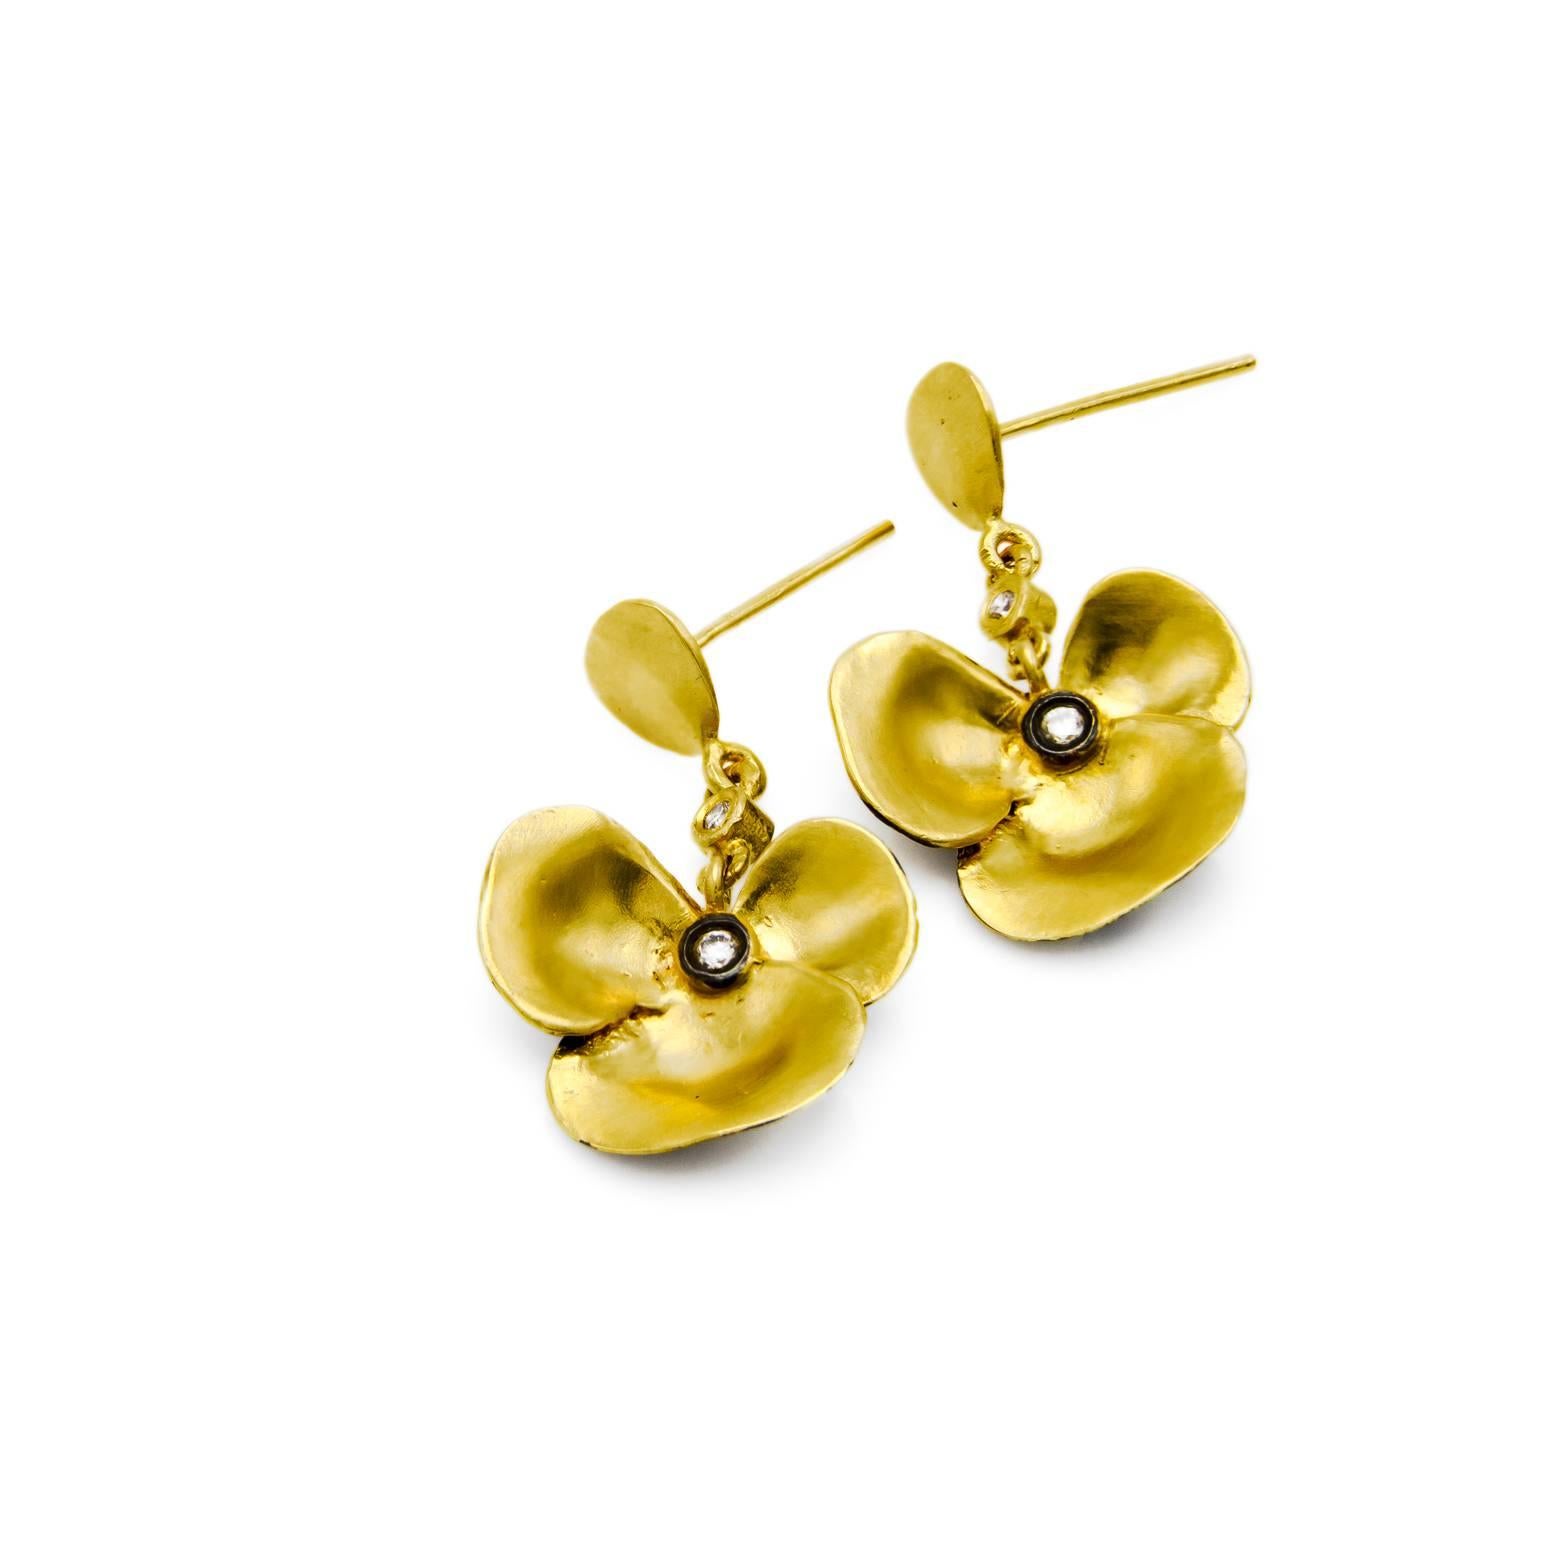 Modern Gold Vermeil Satin Finish Flower Design Post Back Earrings with 4 Diamonds. 